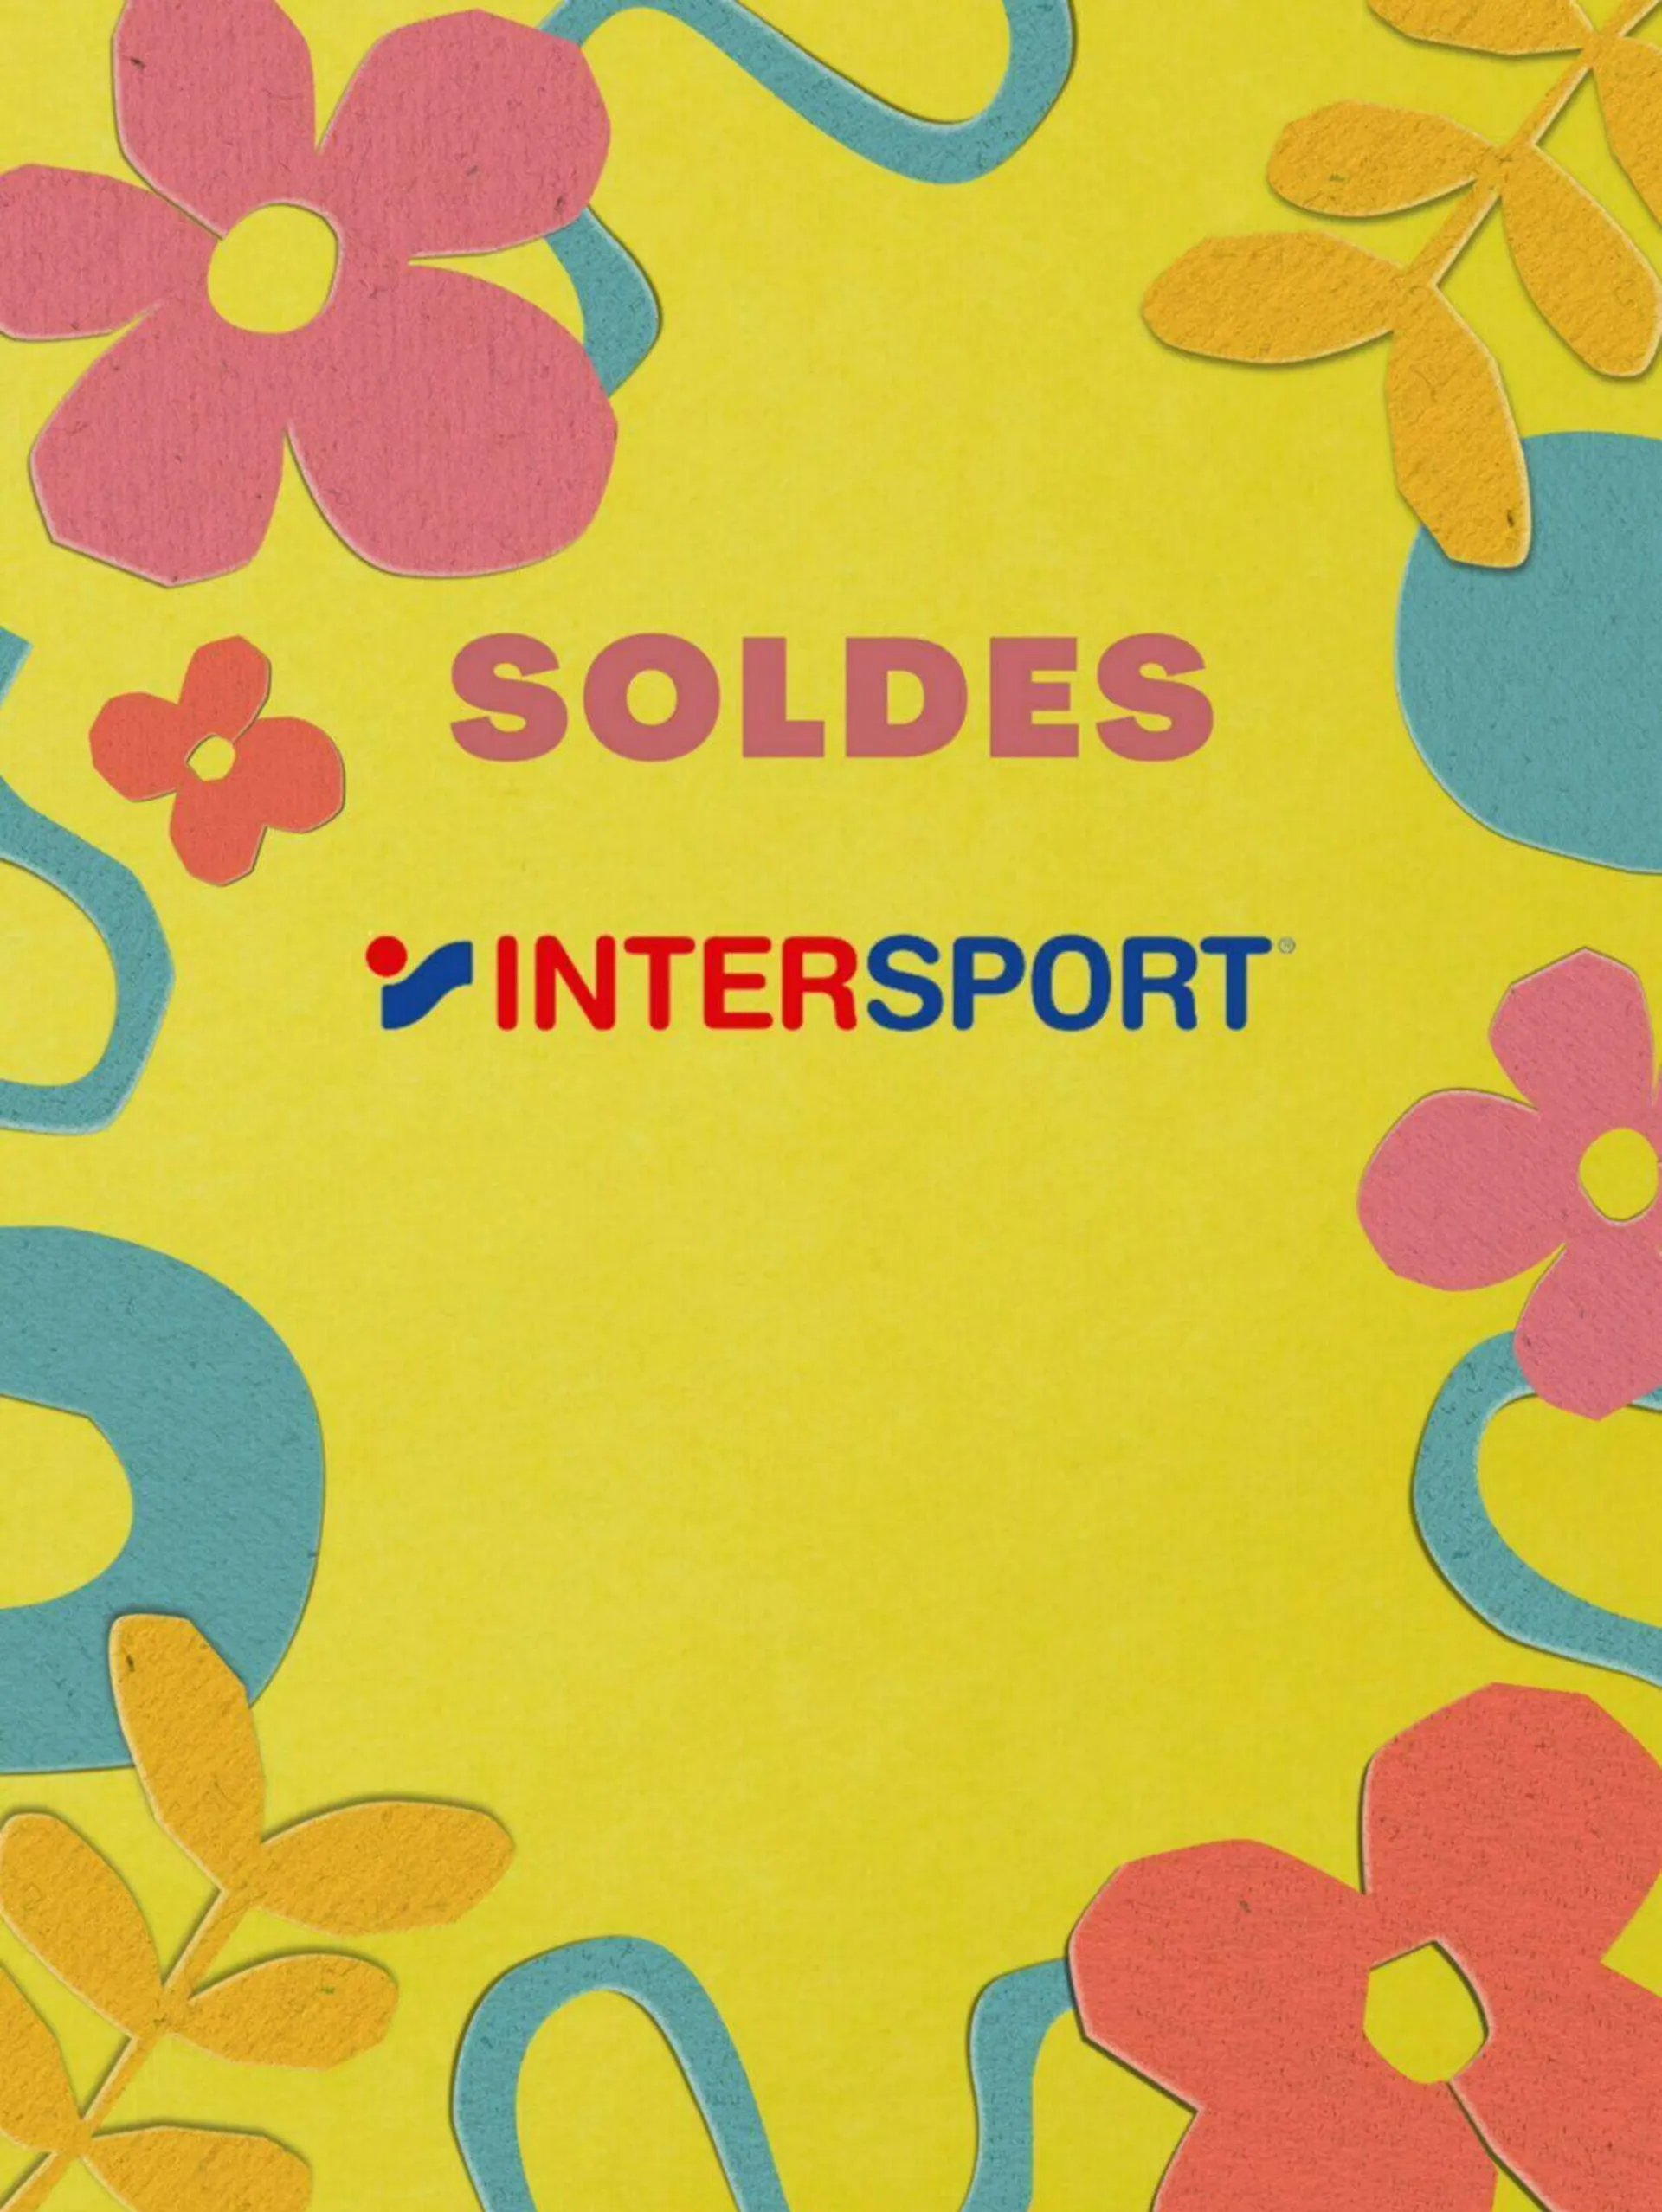 Intersport - 1